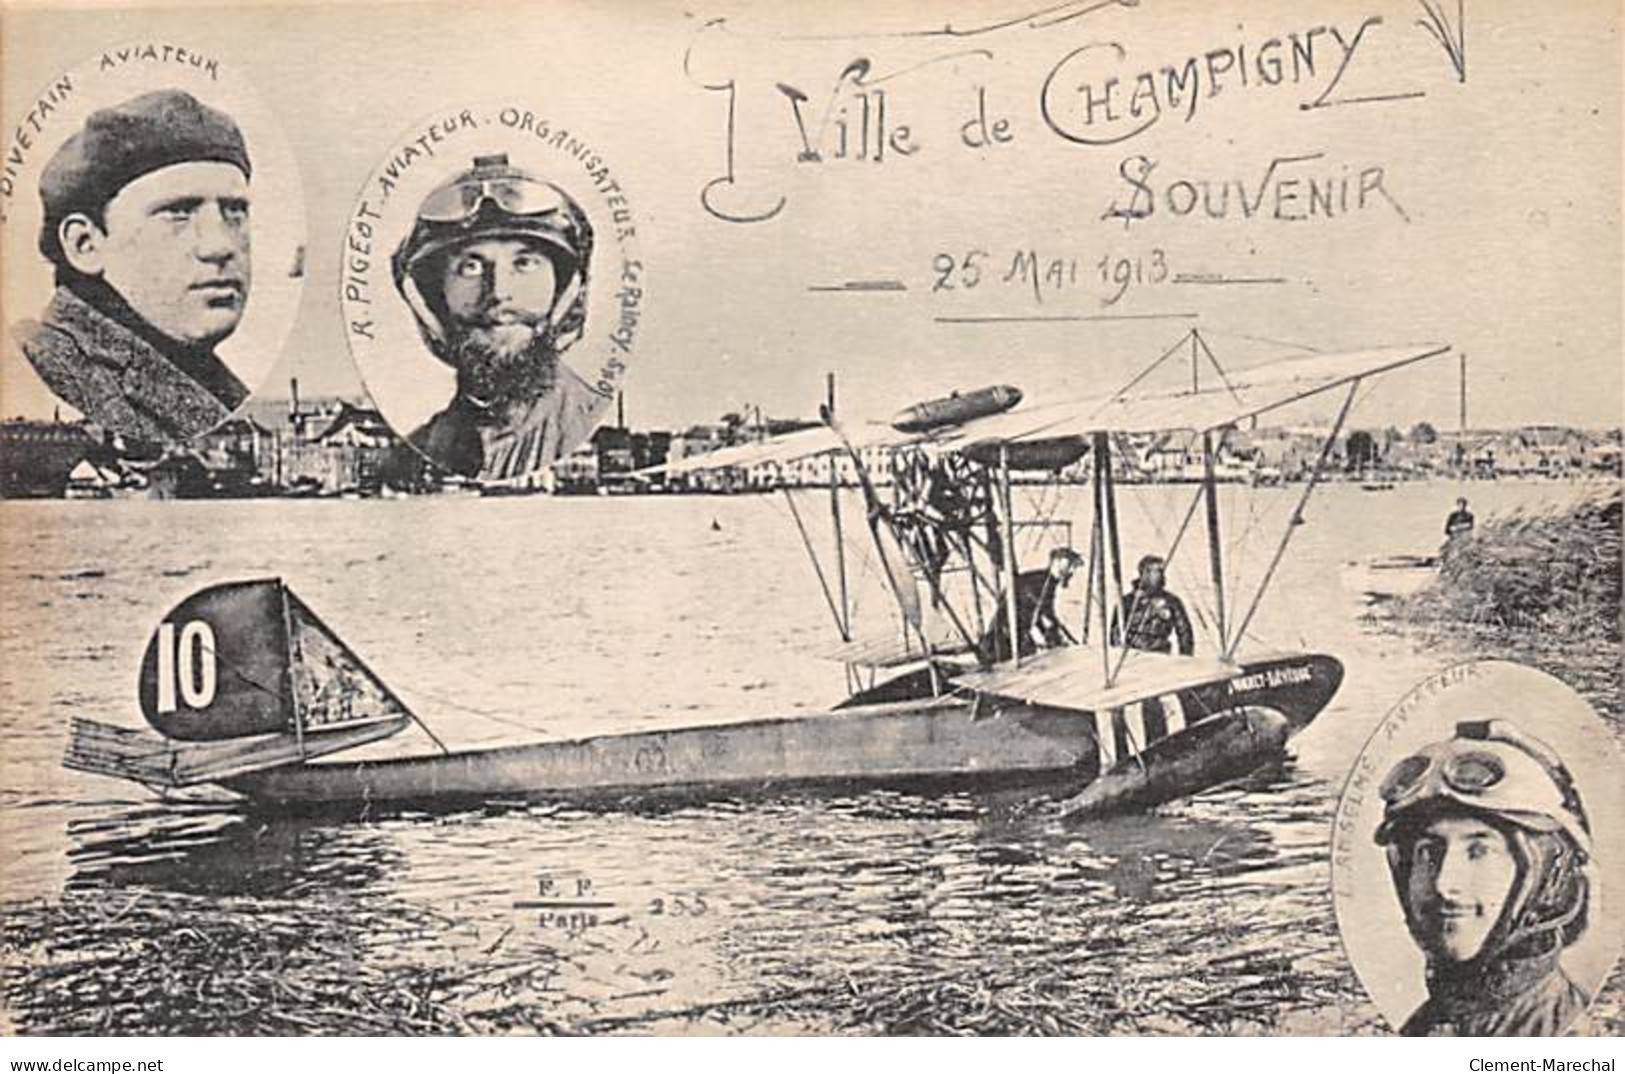 Ville De CHAMPIGNY - Souvenir - 25 Mai 1913 - Très Bon état - Champigny Sur Marne